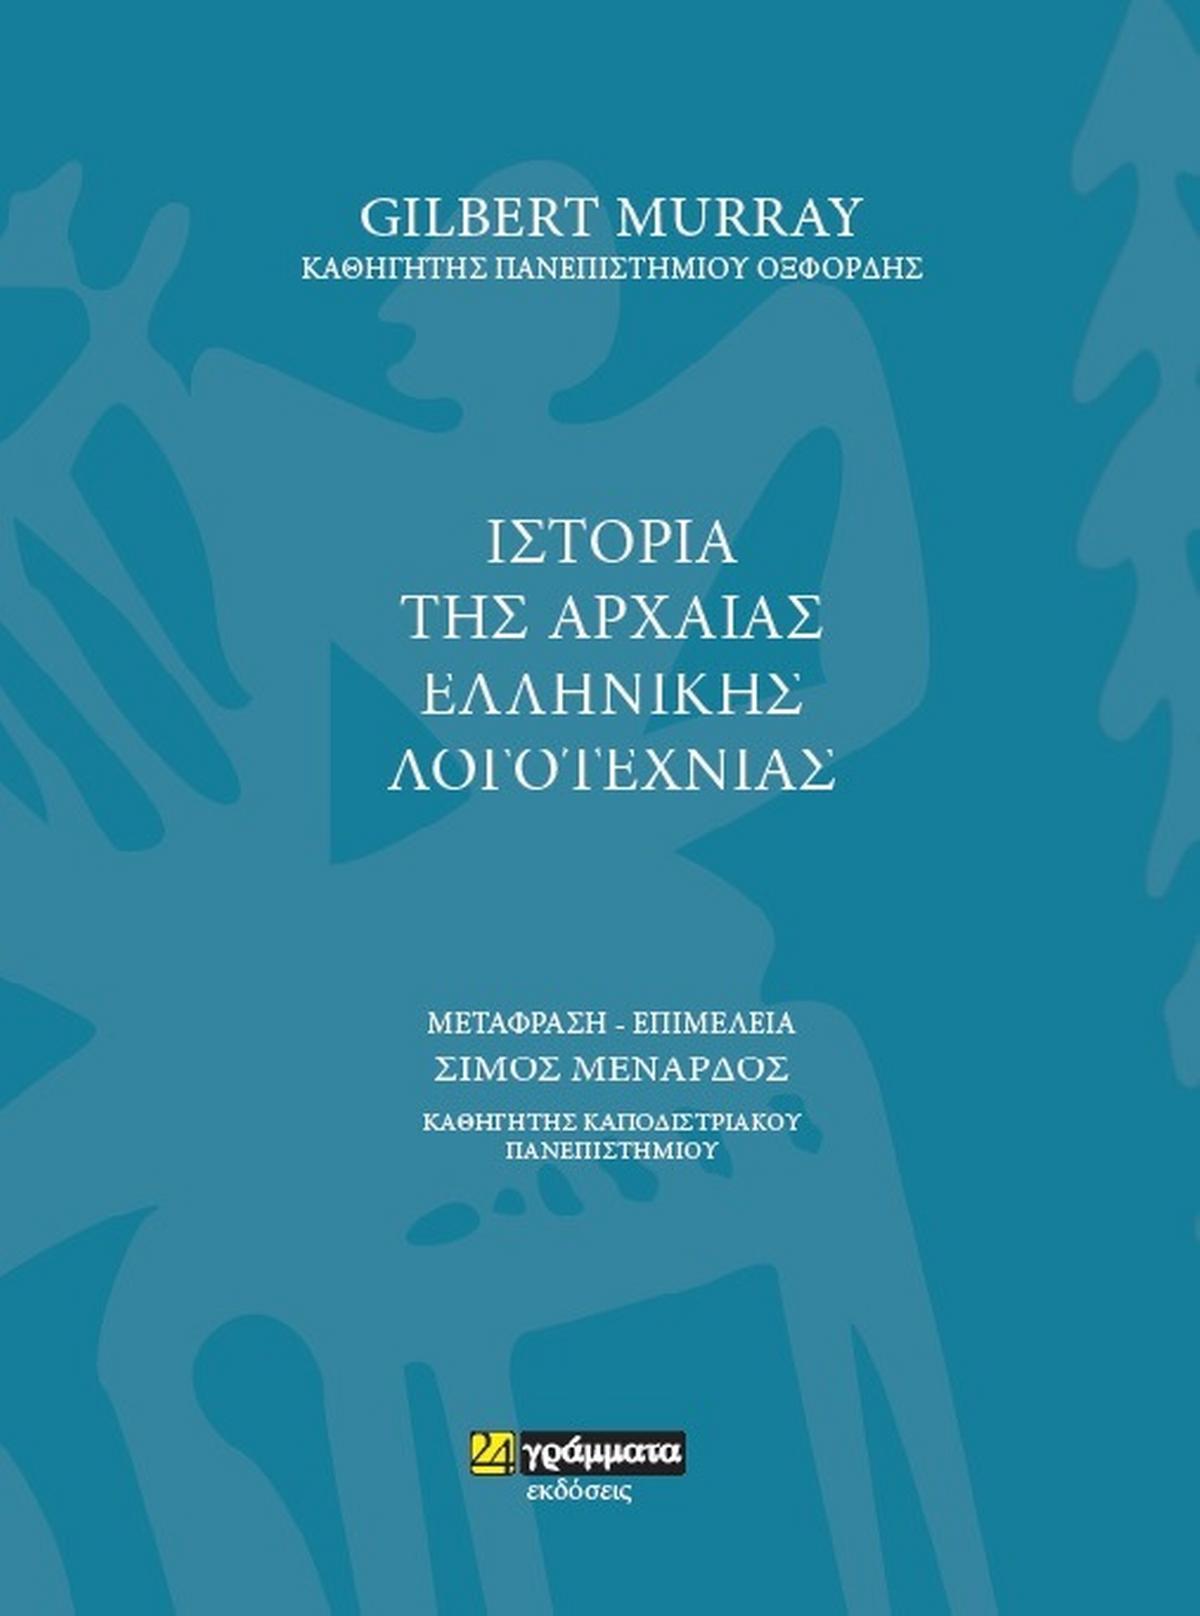 Ιστορια της Αρχαίας Ελληνικής Λογοτεχνίας